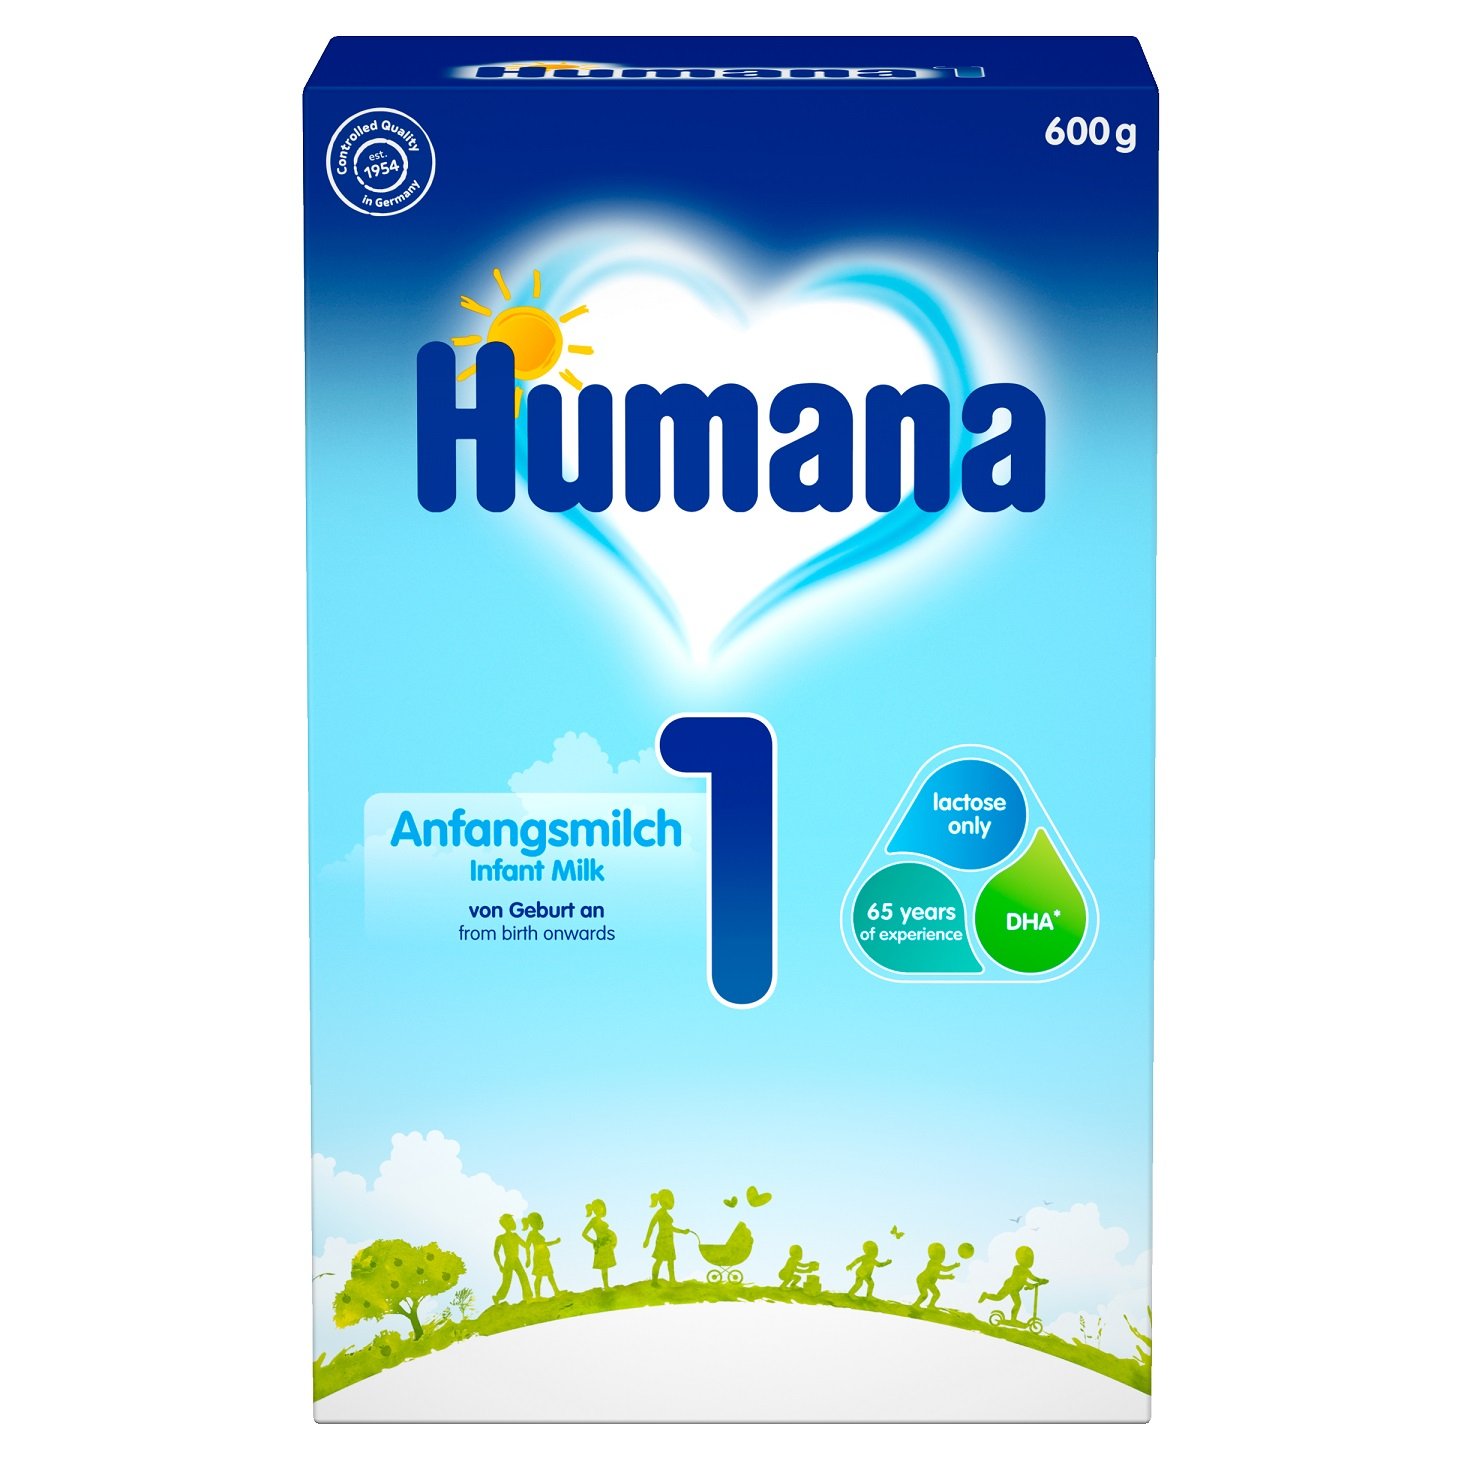 Суха молочна суміш Humana 1 з пребіотиками, LC PUFA і нуклеотидами, 600 г - фото 1